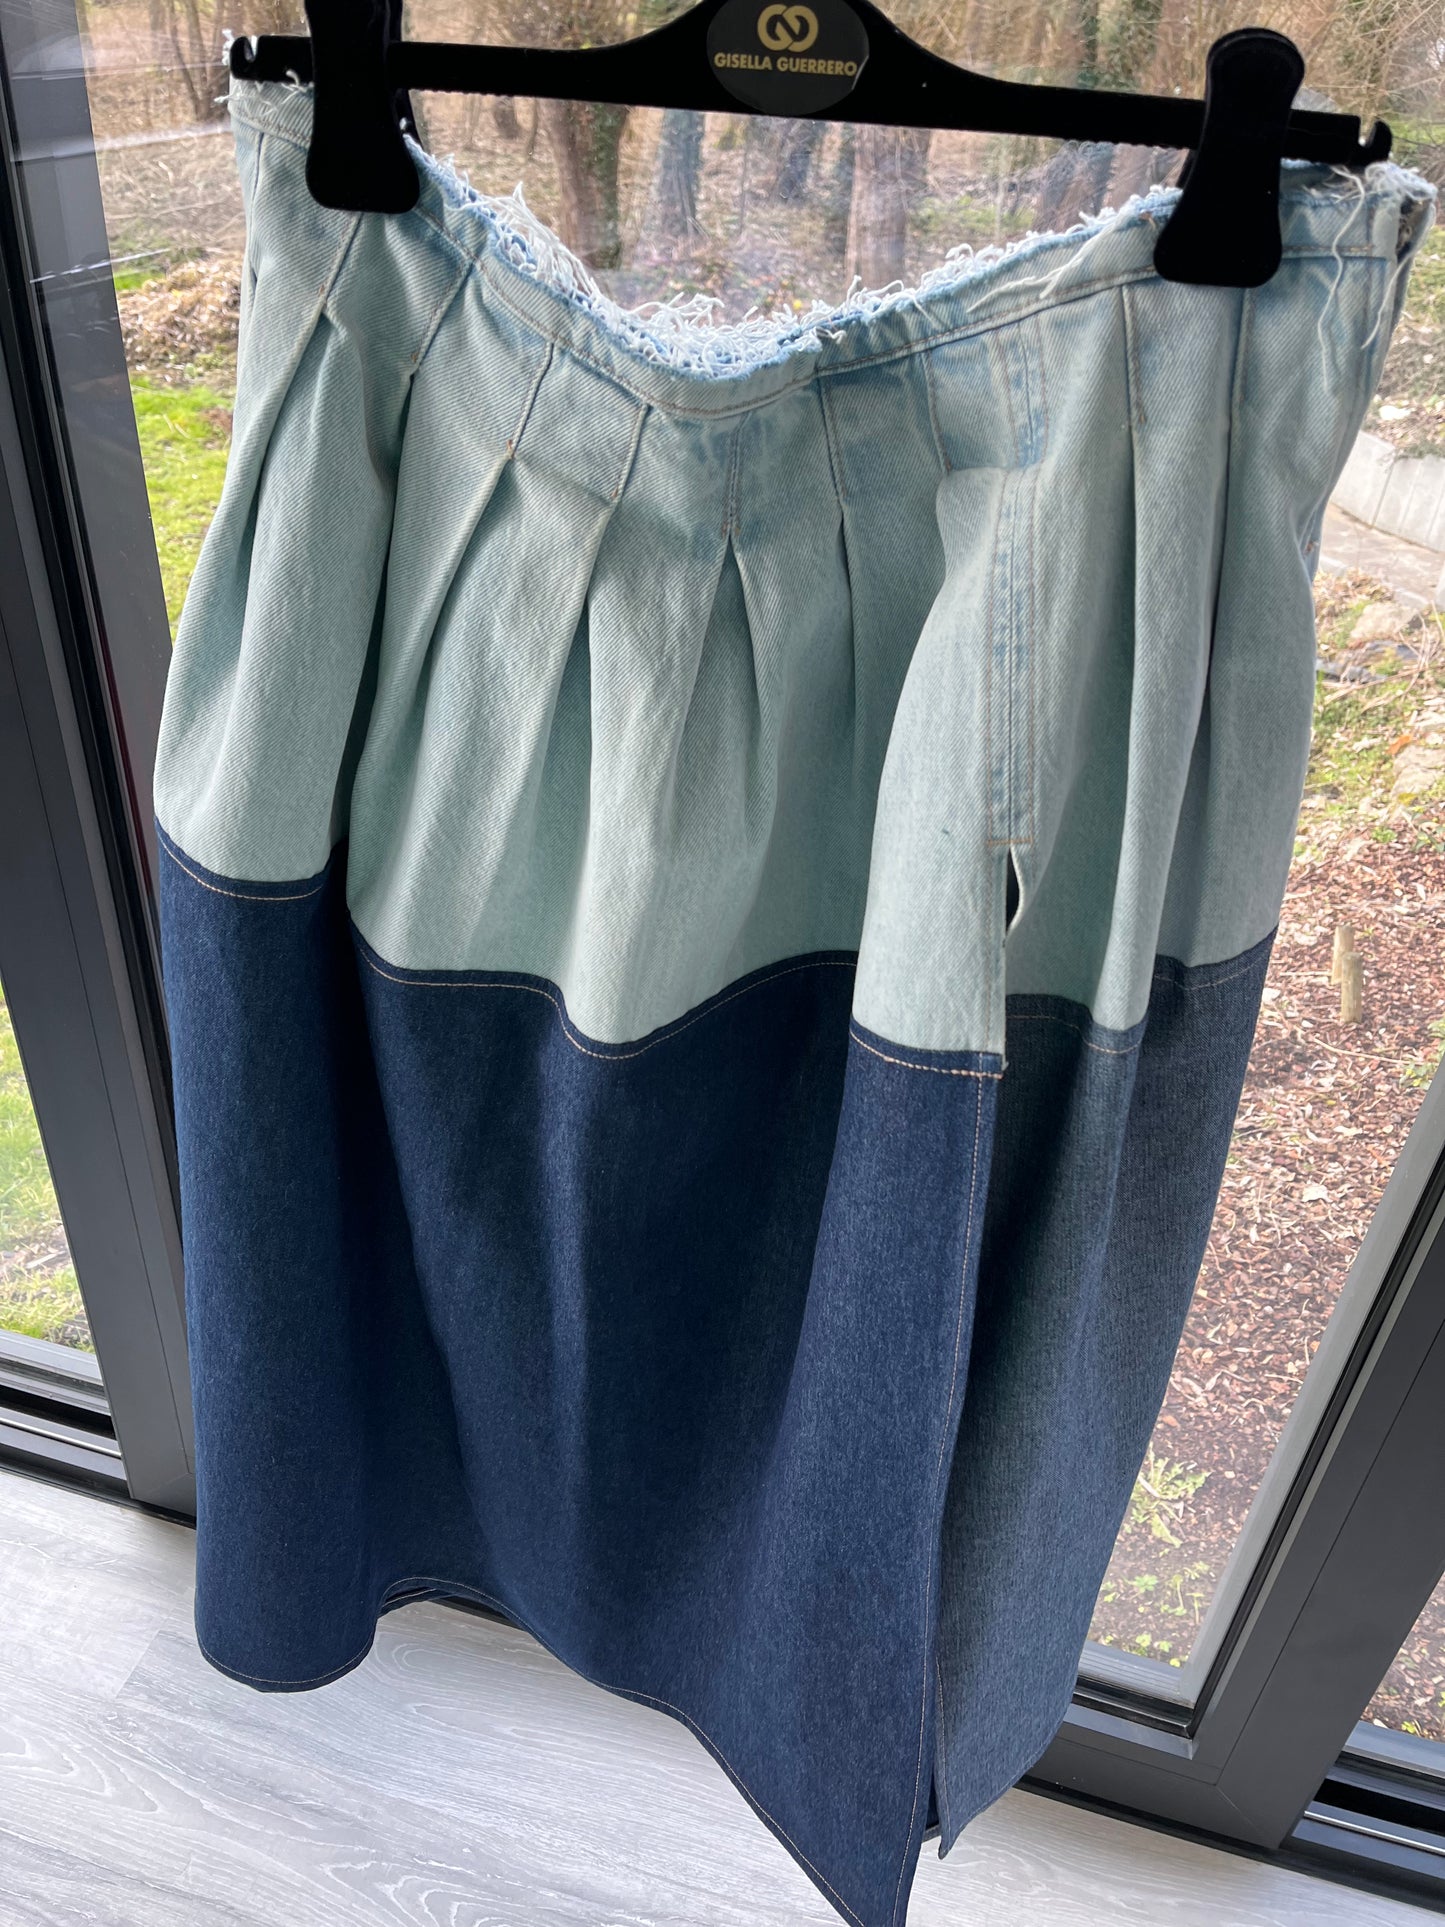 GG044 Vintage Boho Long Skirt